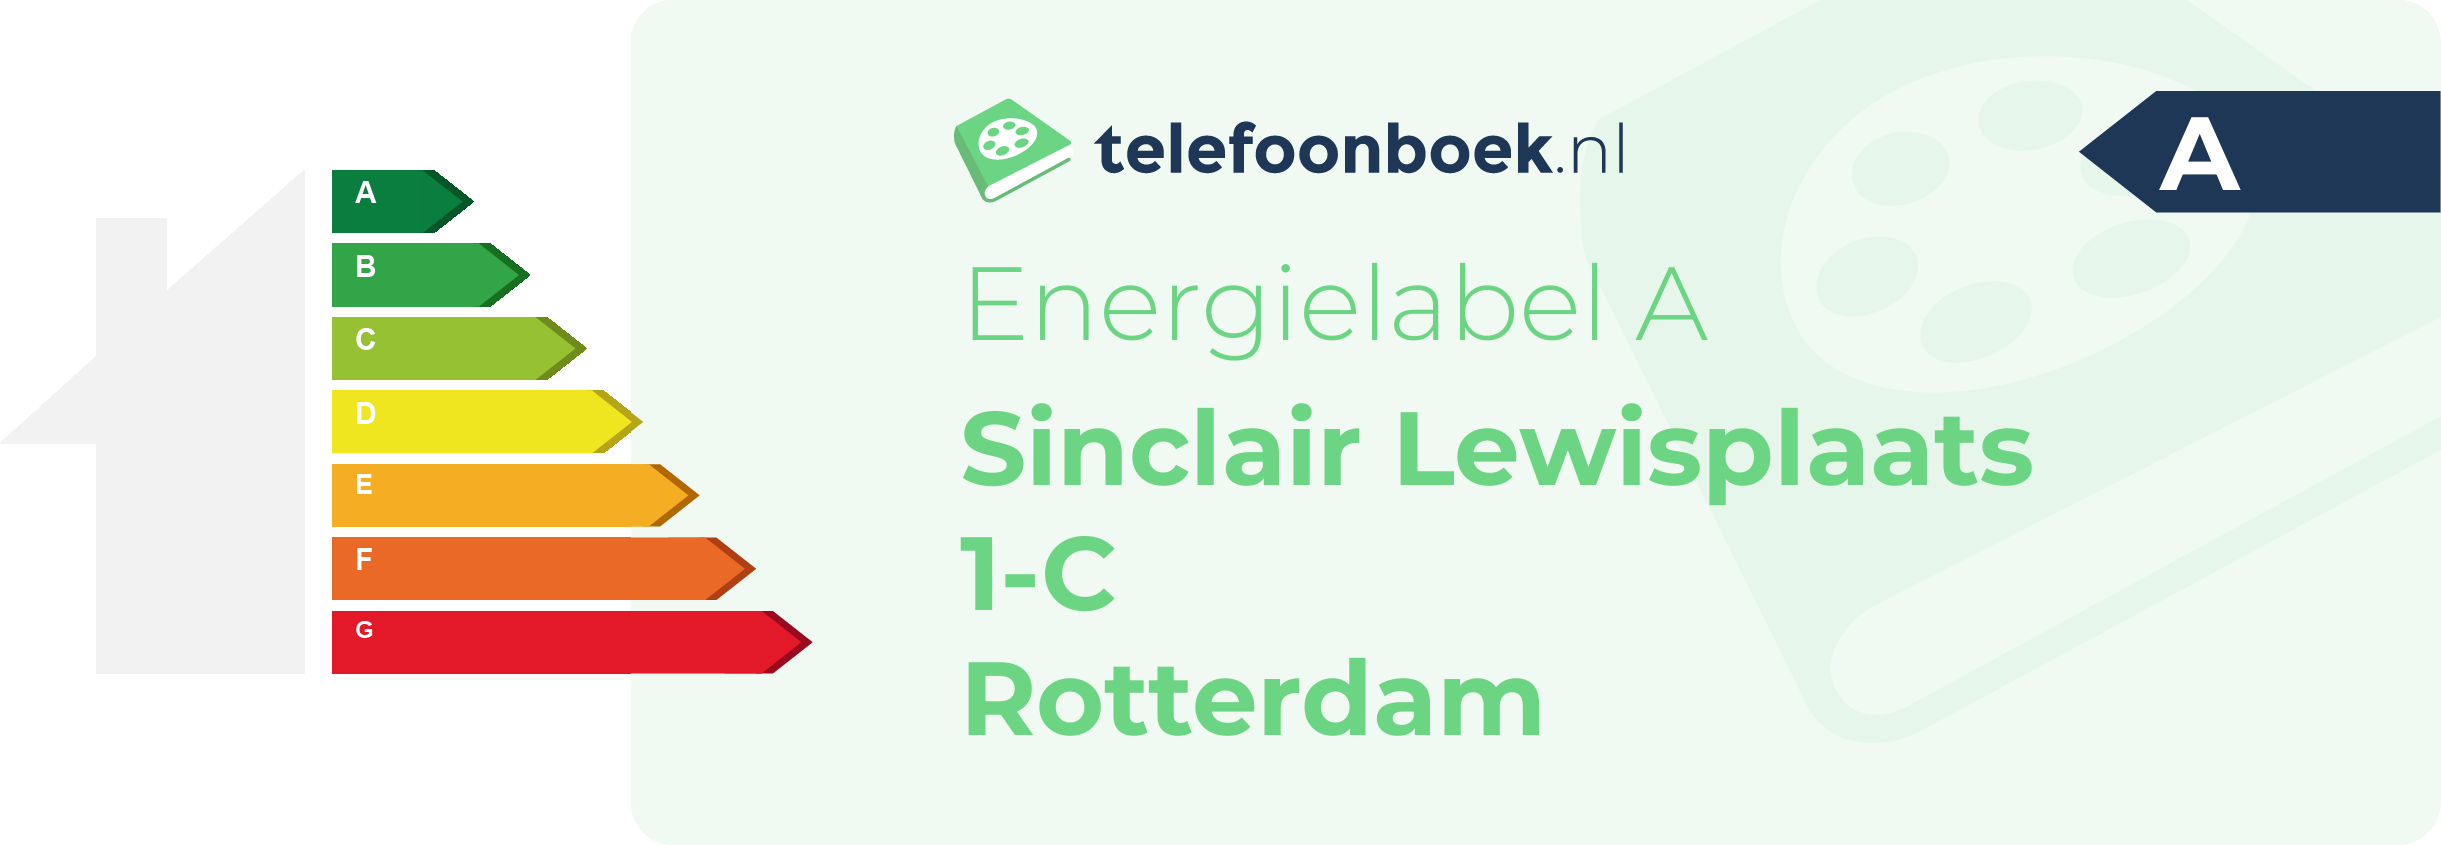 Energielabel Sinclair Lewisplaats 1-C Rotterdam